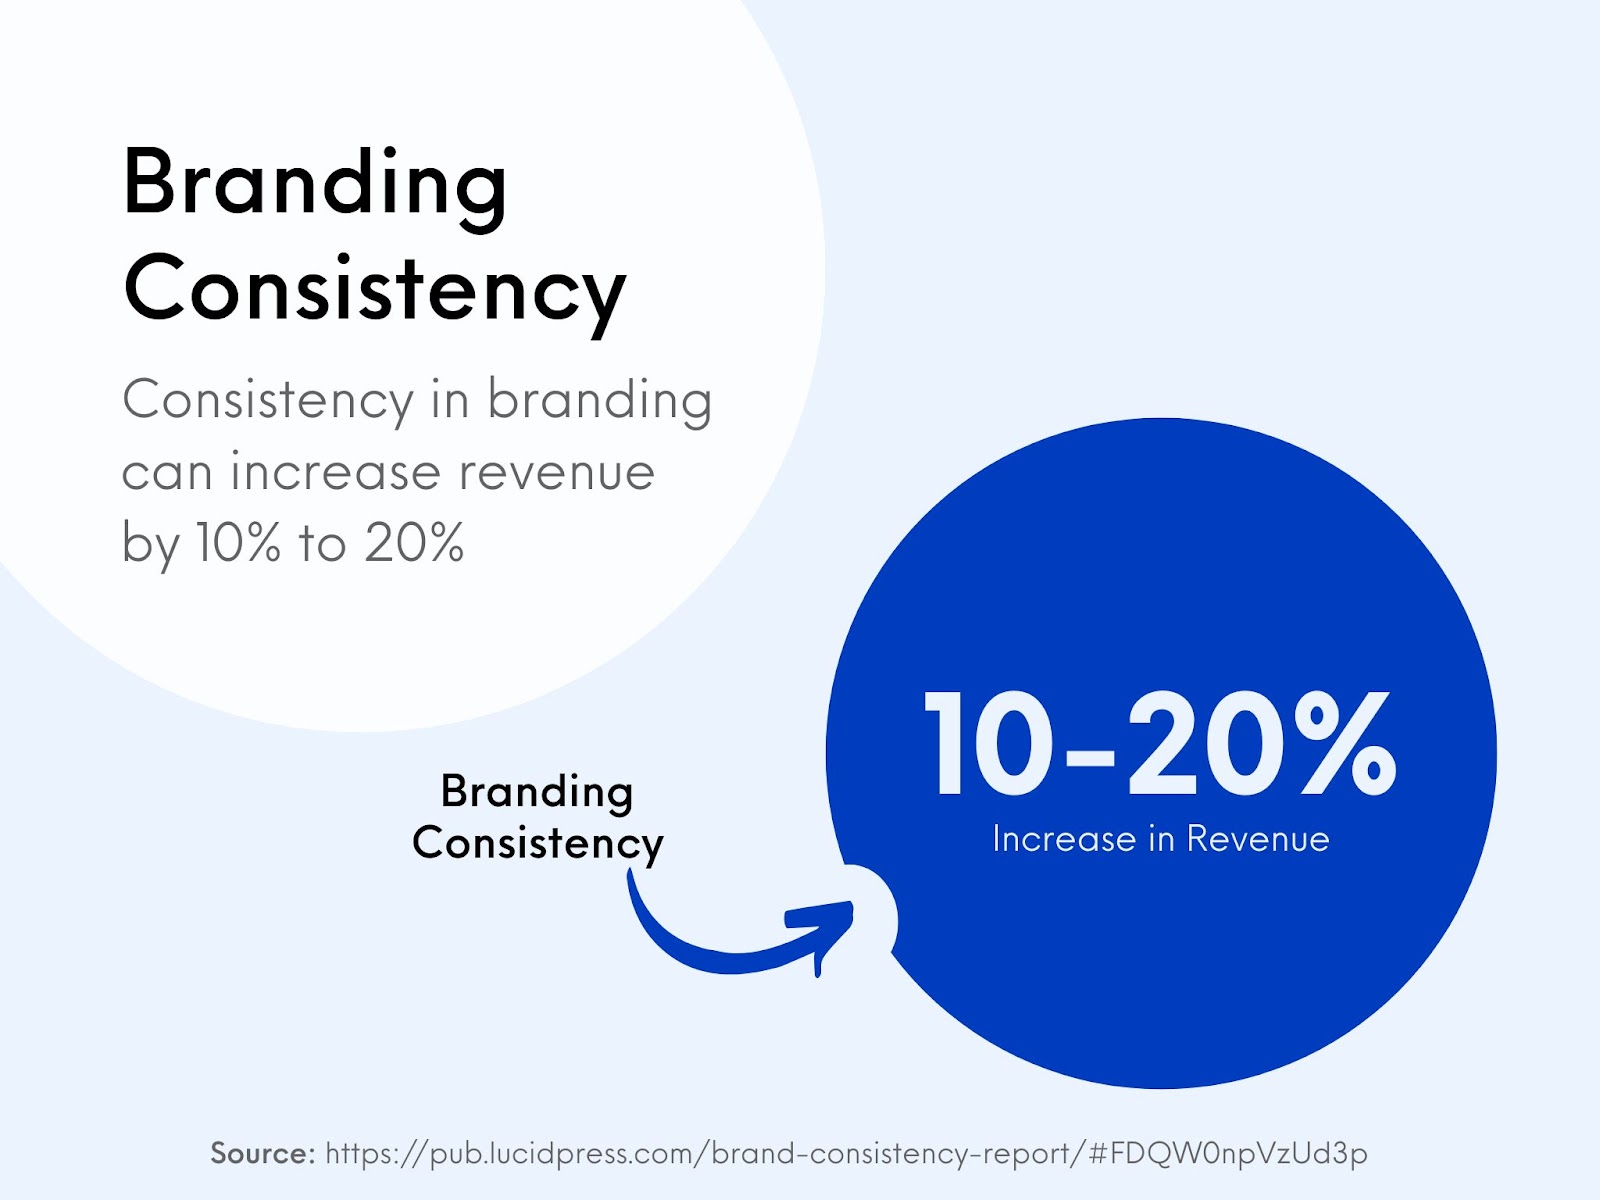 Branding consistency